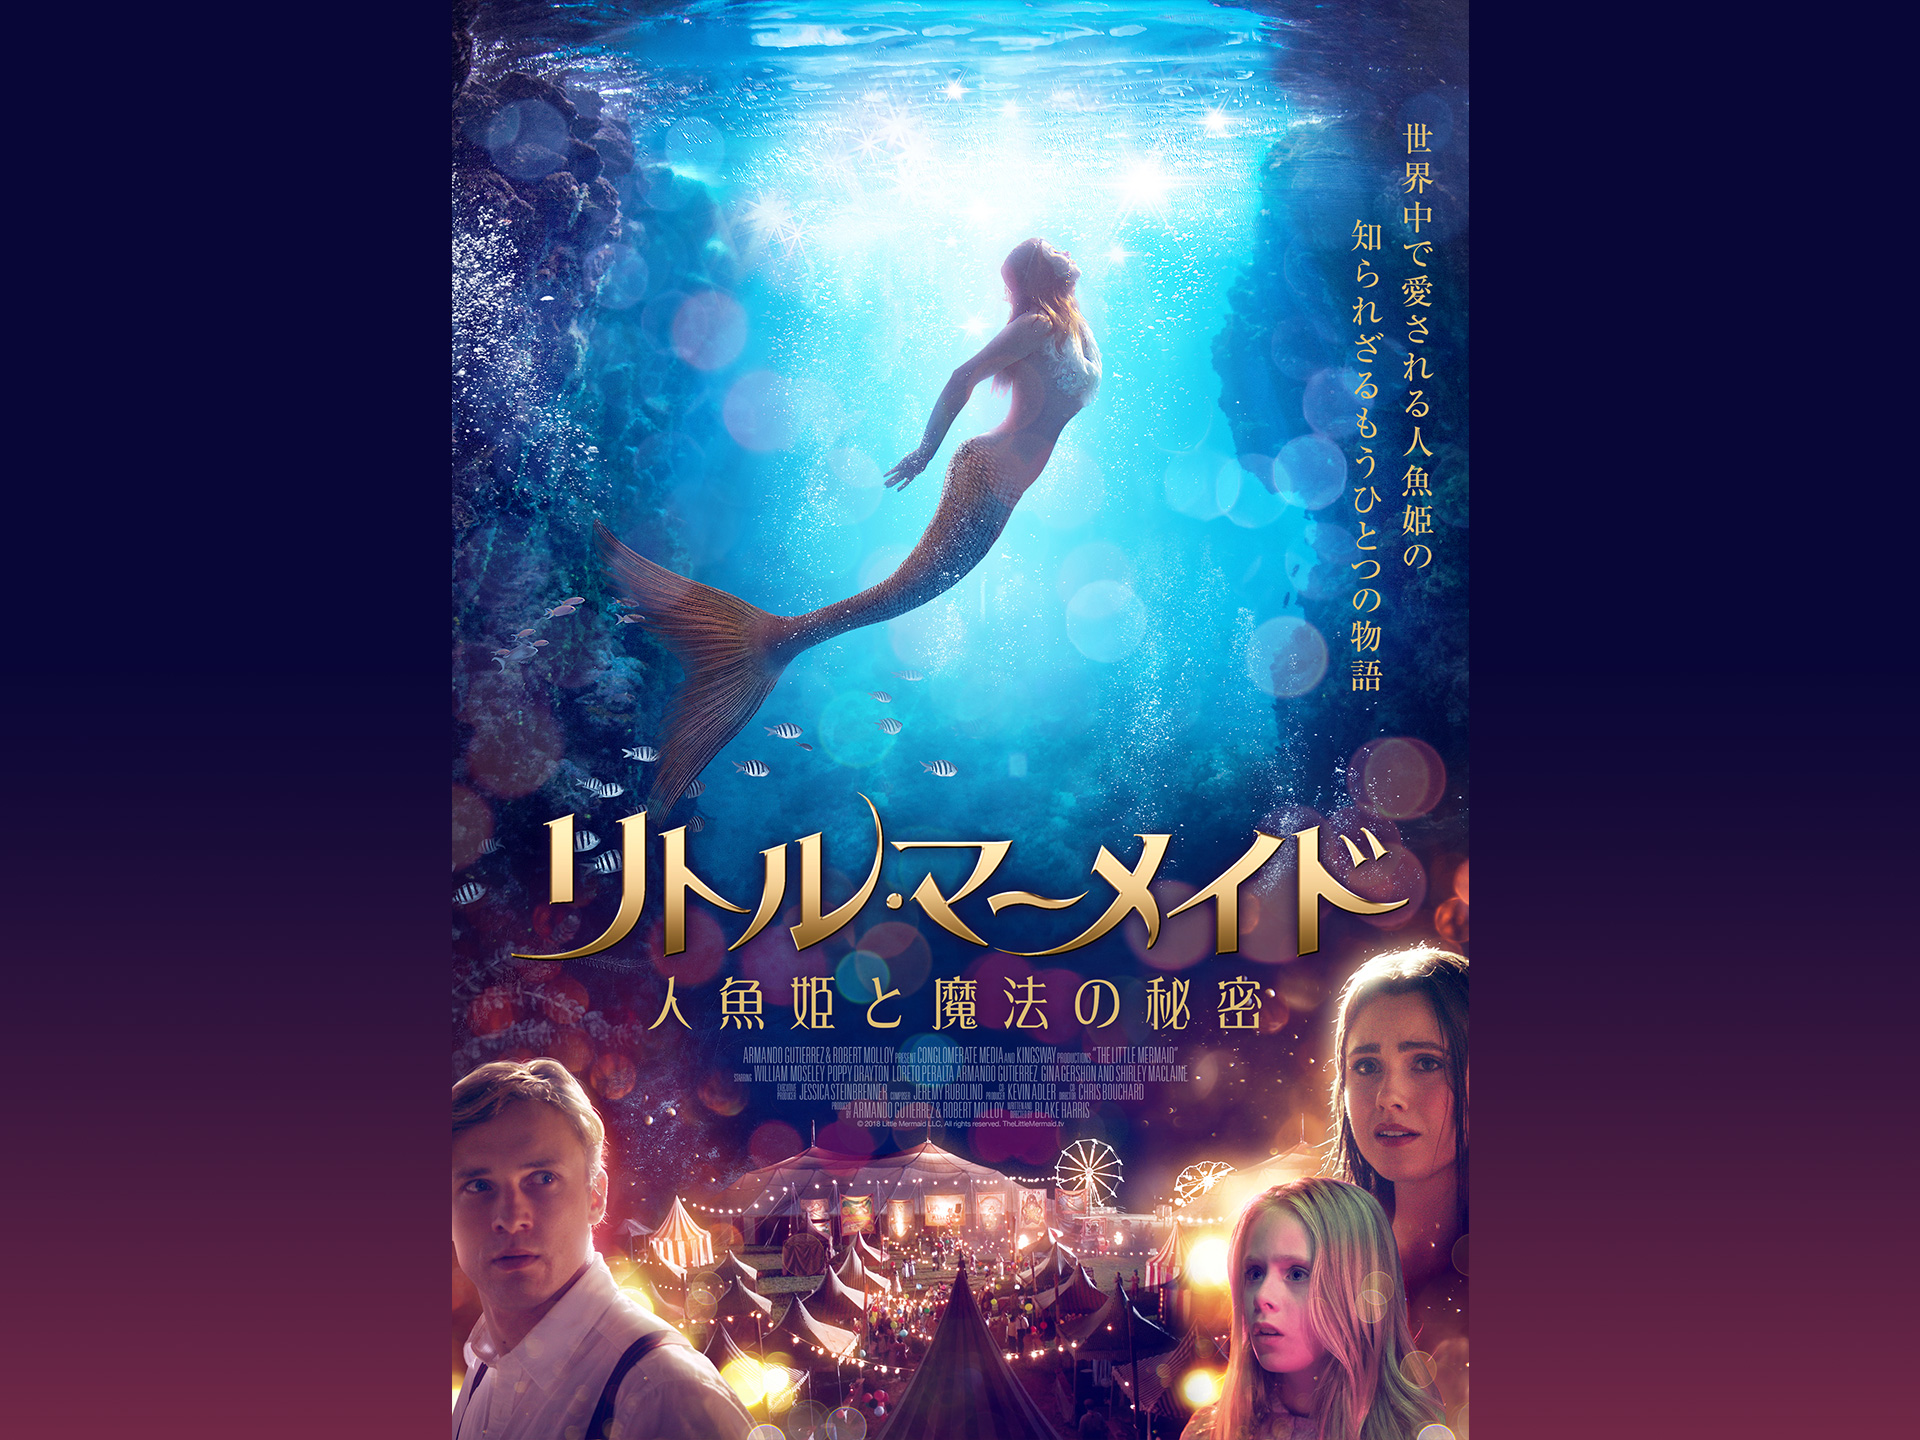 無料視聴あり 映画 リトル マーメイド 人魚姫と魔法の秘密 の動画 初月無料 動画配信サービスのビデオマーケット